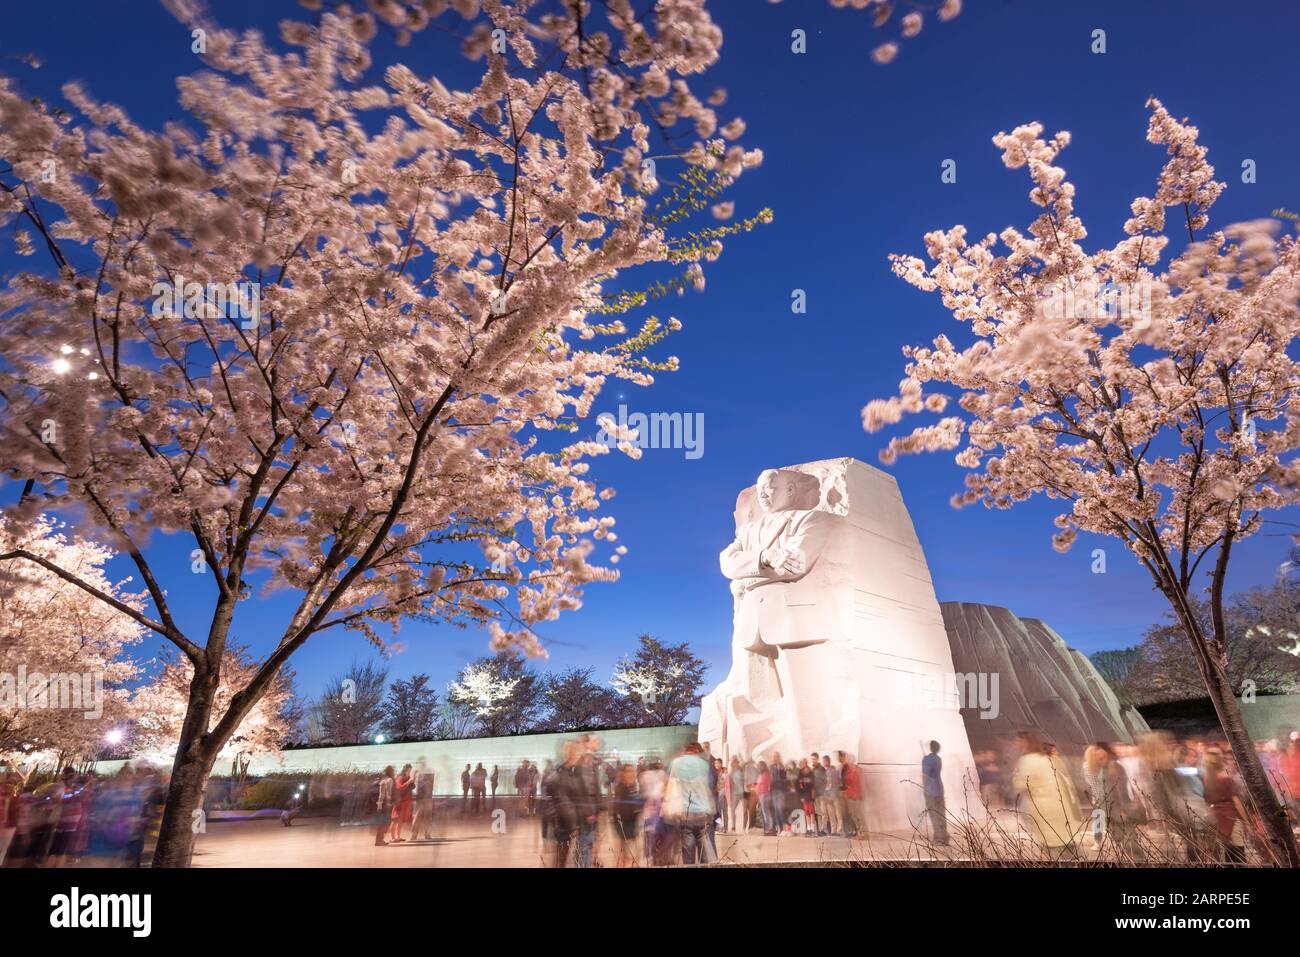 Washington - 12. APRIL 2015: Das Denkmal für den Bürgerrechtsführer Martin Luther King, Jr. überragt die Menschenmassen während der Frühjahrssaison in West Potom Stockfoto